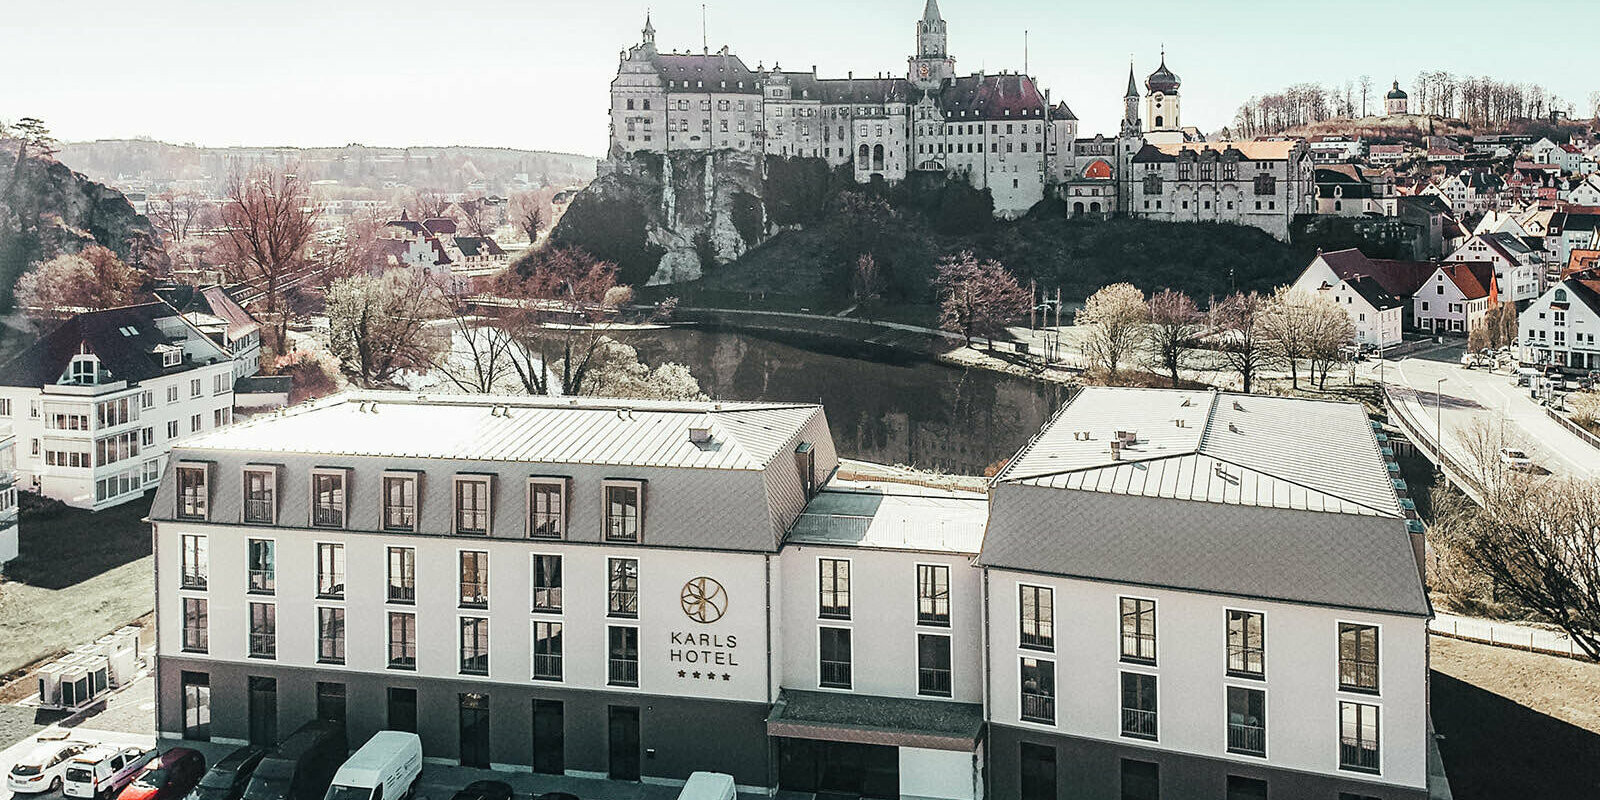 Čelní z ptačí perspektivy na hotel Karls s výhledem na Dunajský hrad Sigmaringen.